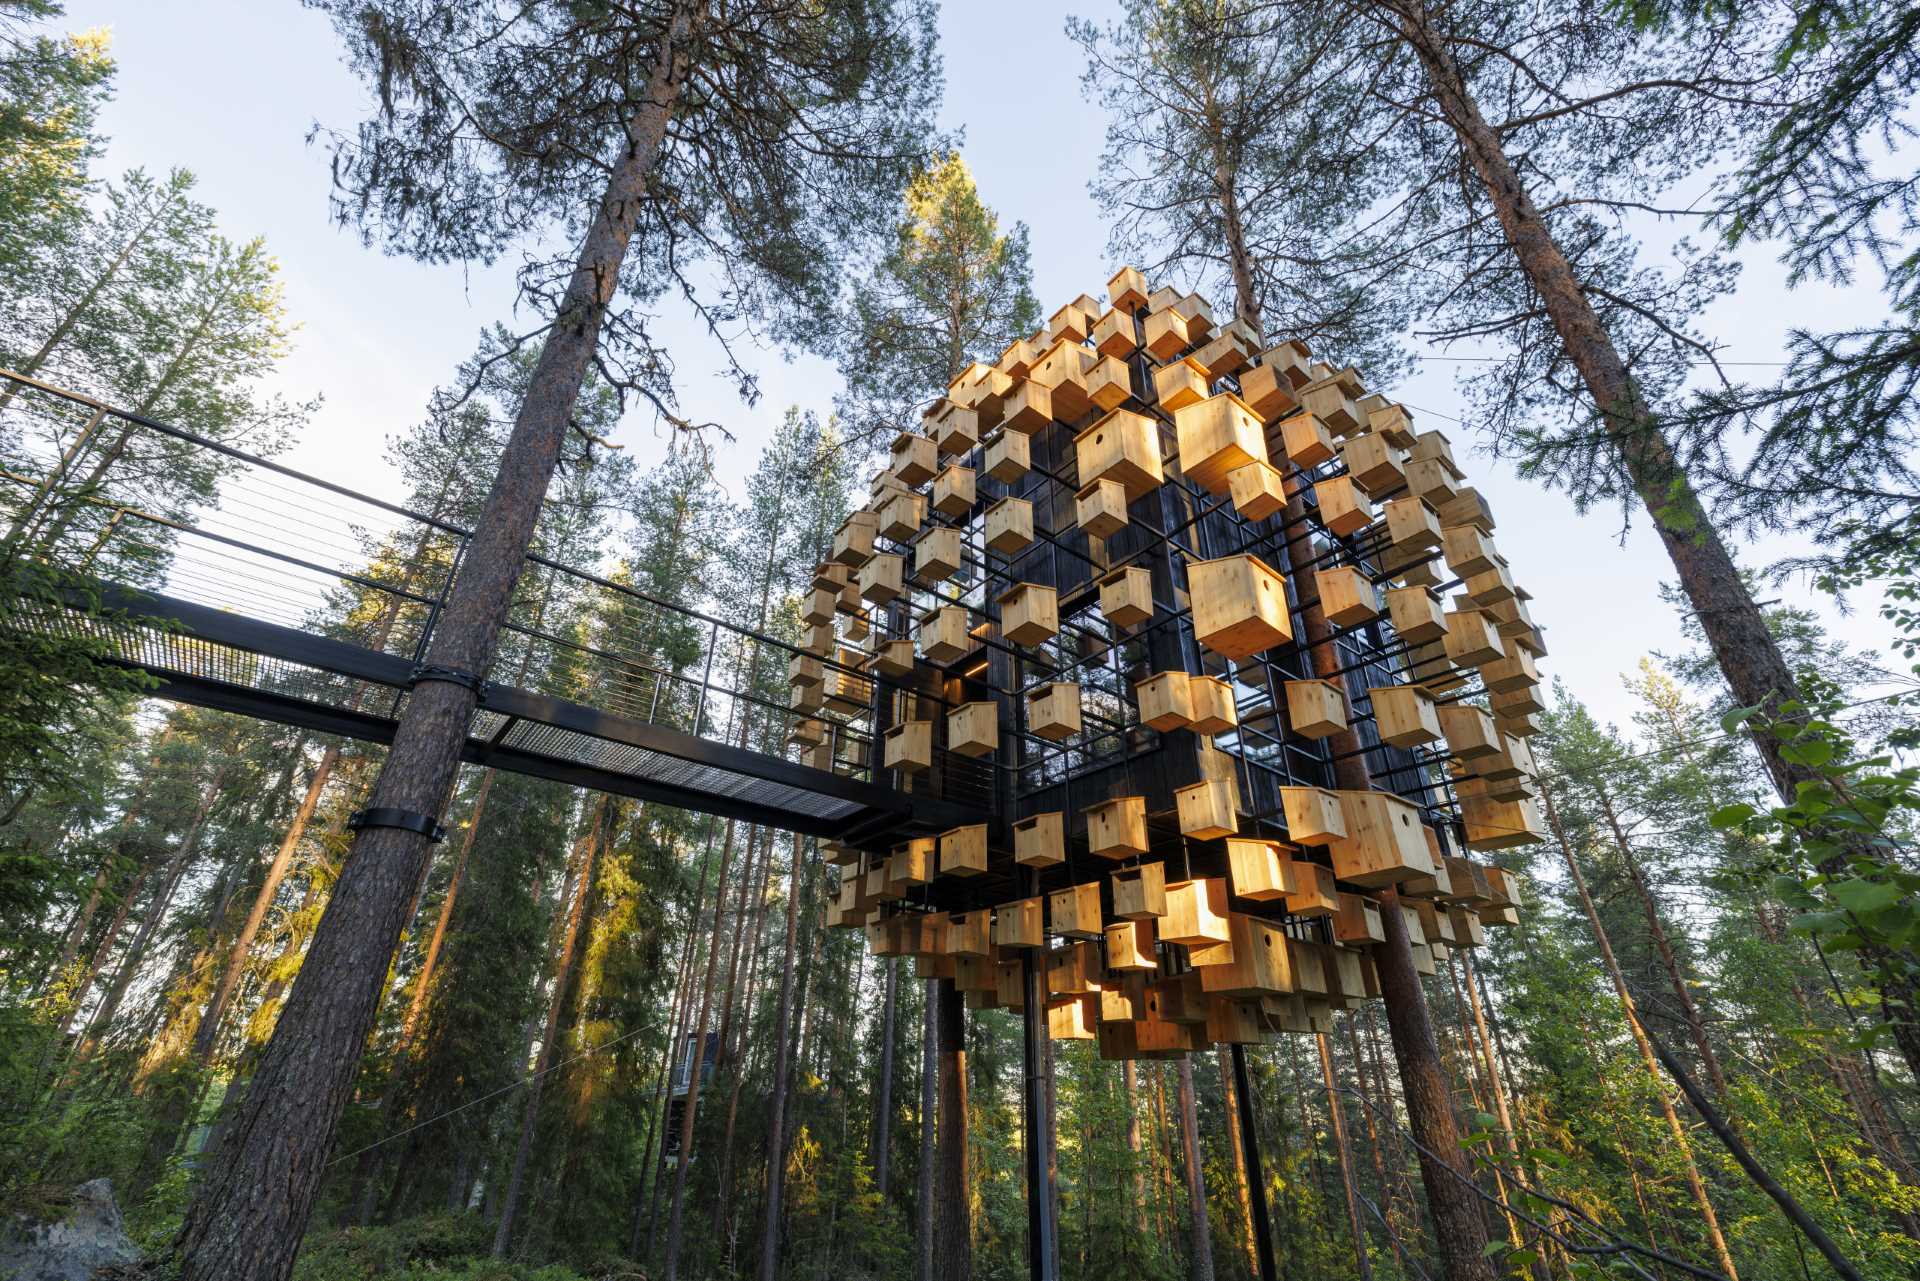 هتل معلق در جنگل سوئد با 350 خانه پرنده